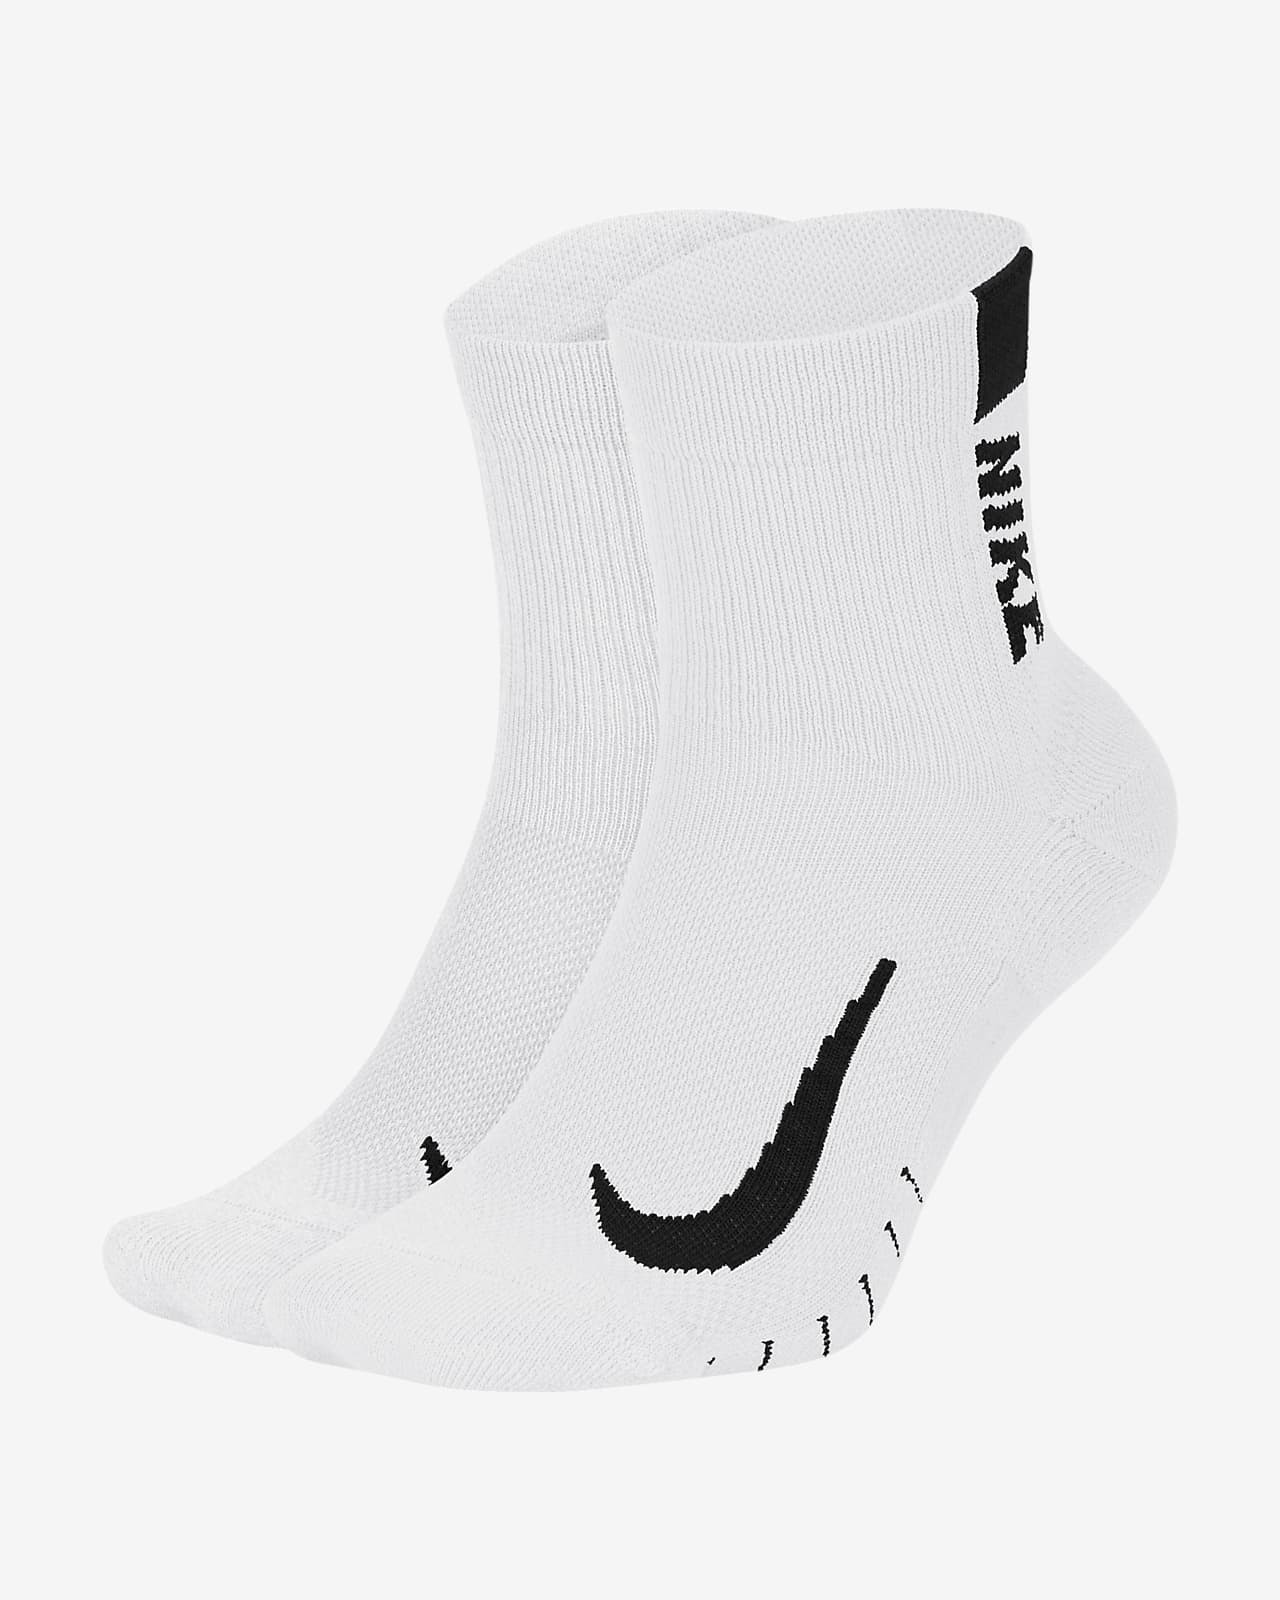 ถุงเท้าวิ่งหุ้มข้อ Nike Multiplier (2 คู่)